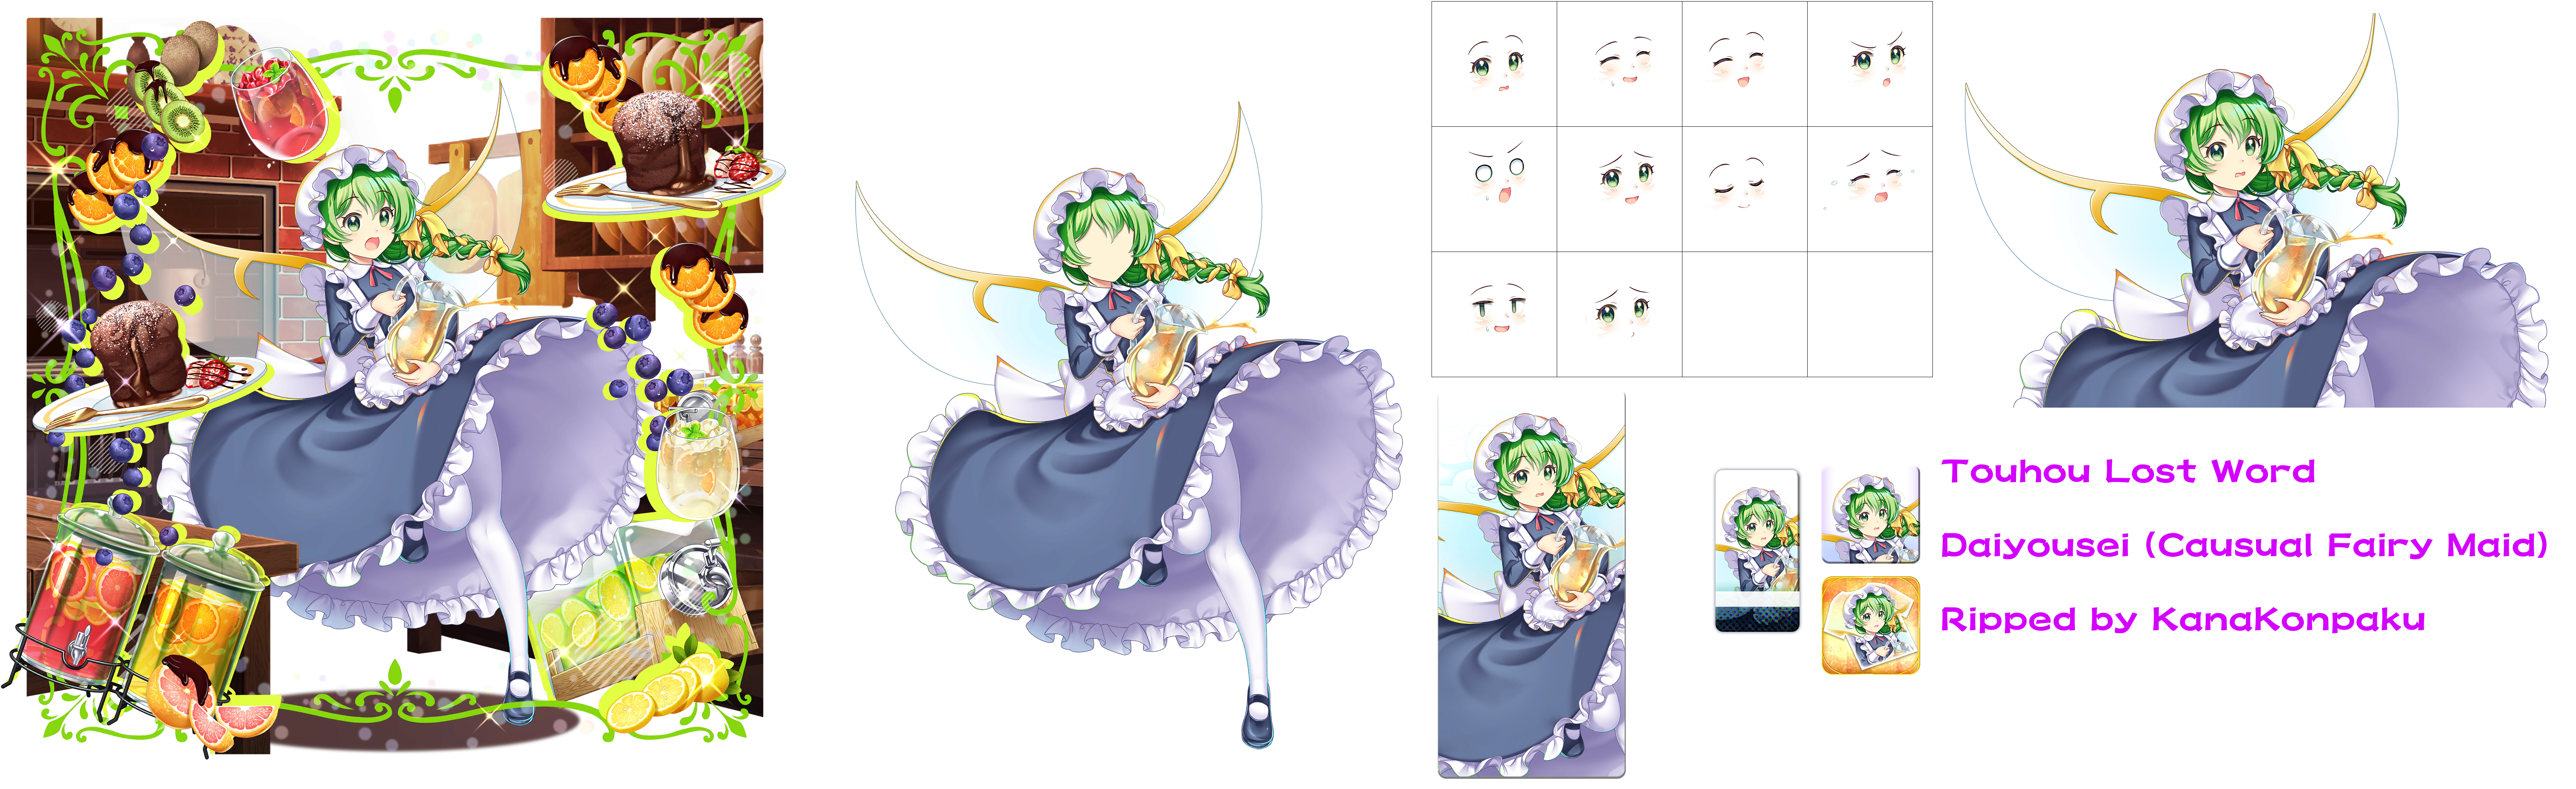 Daiyousei (Causual Fairy Maid)